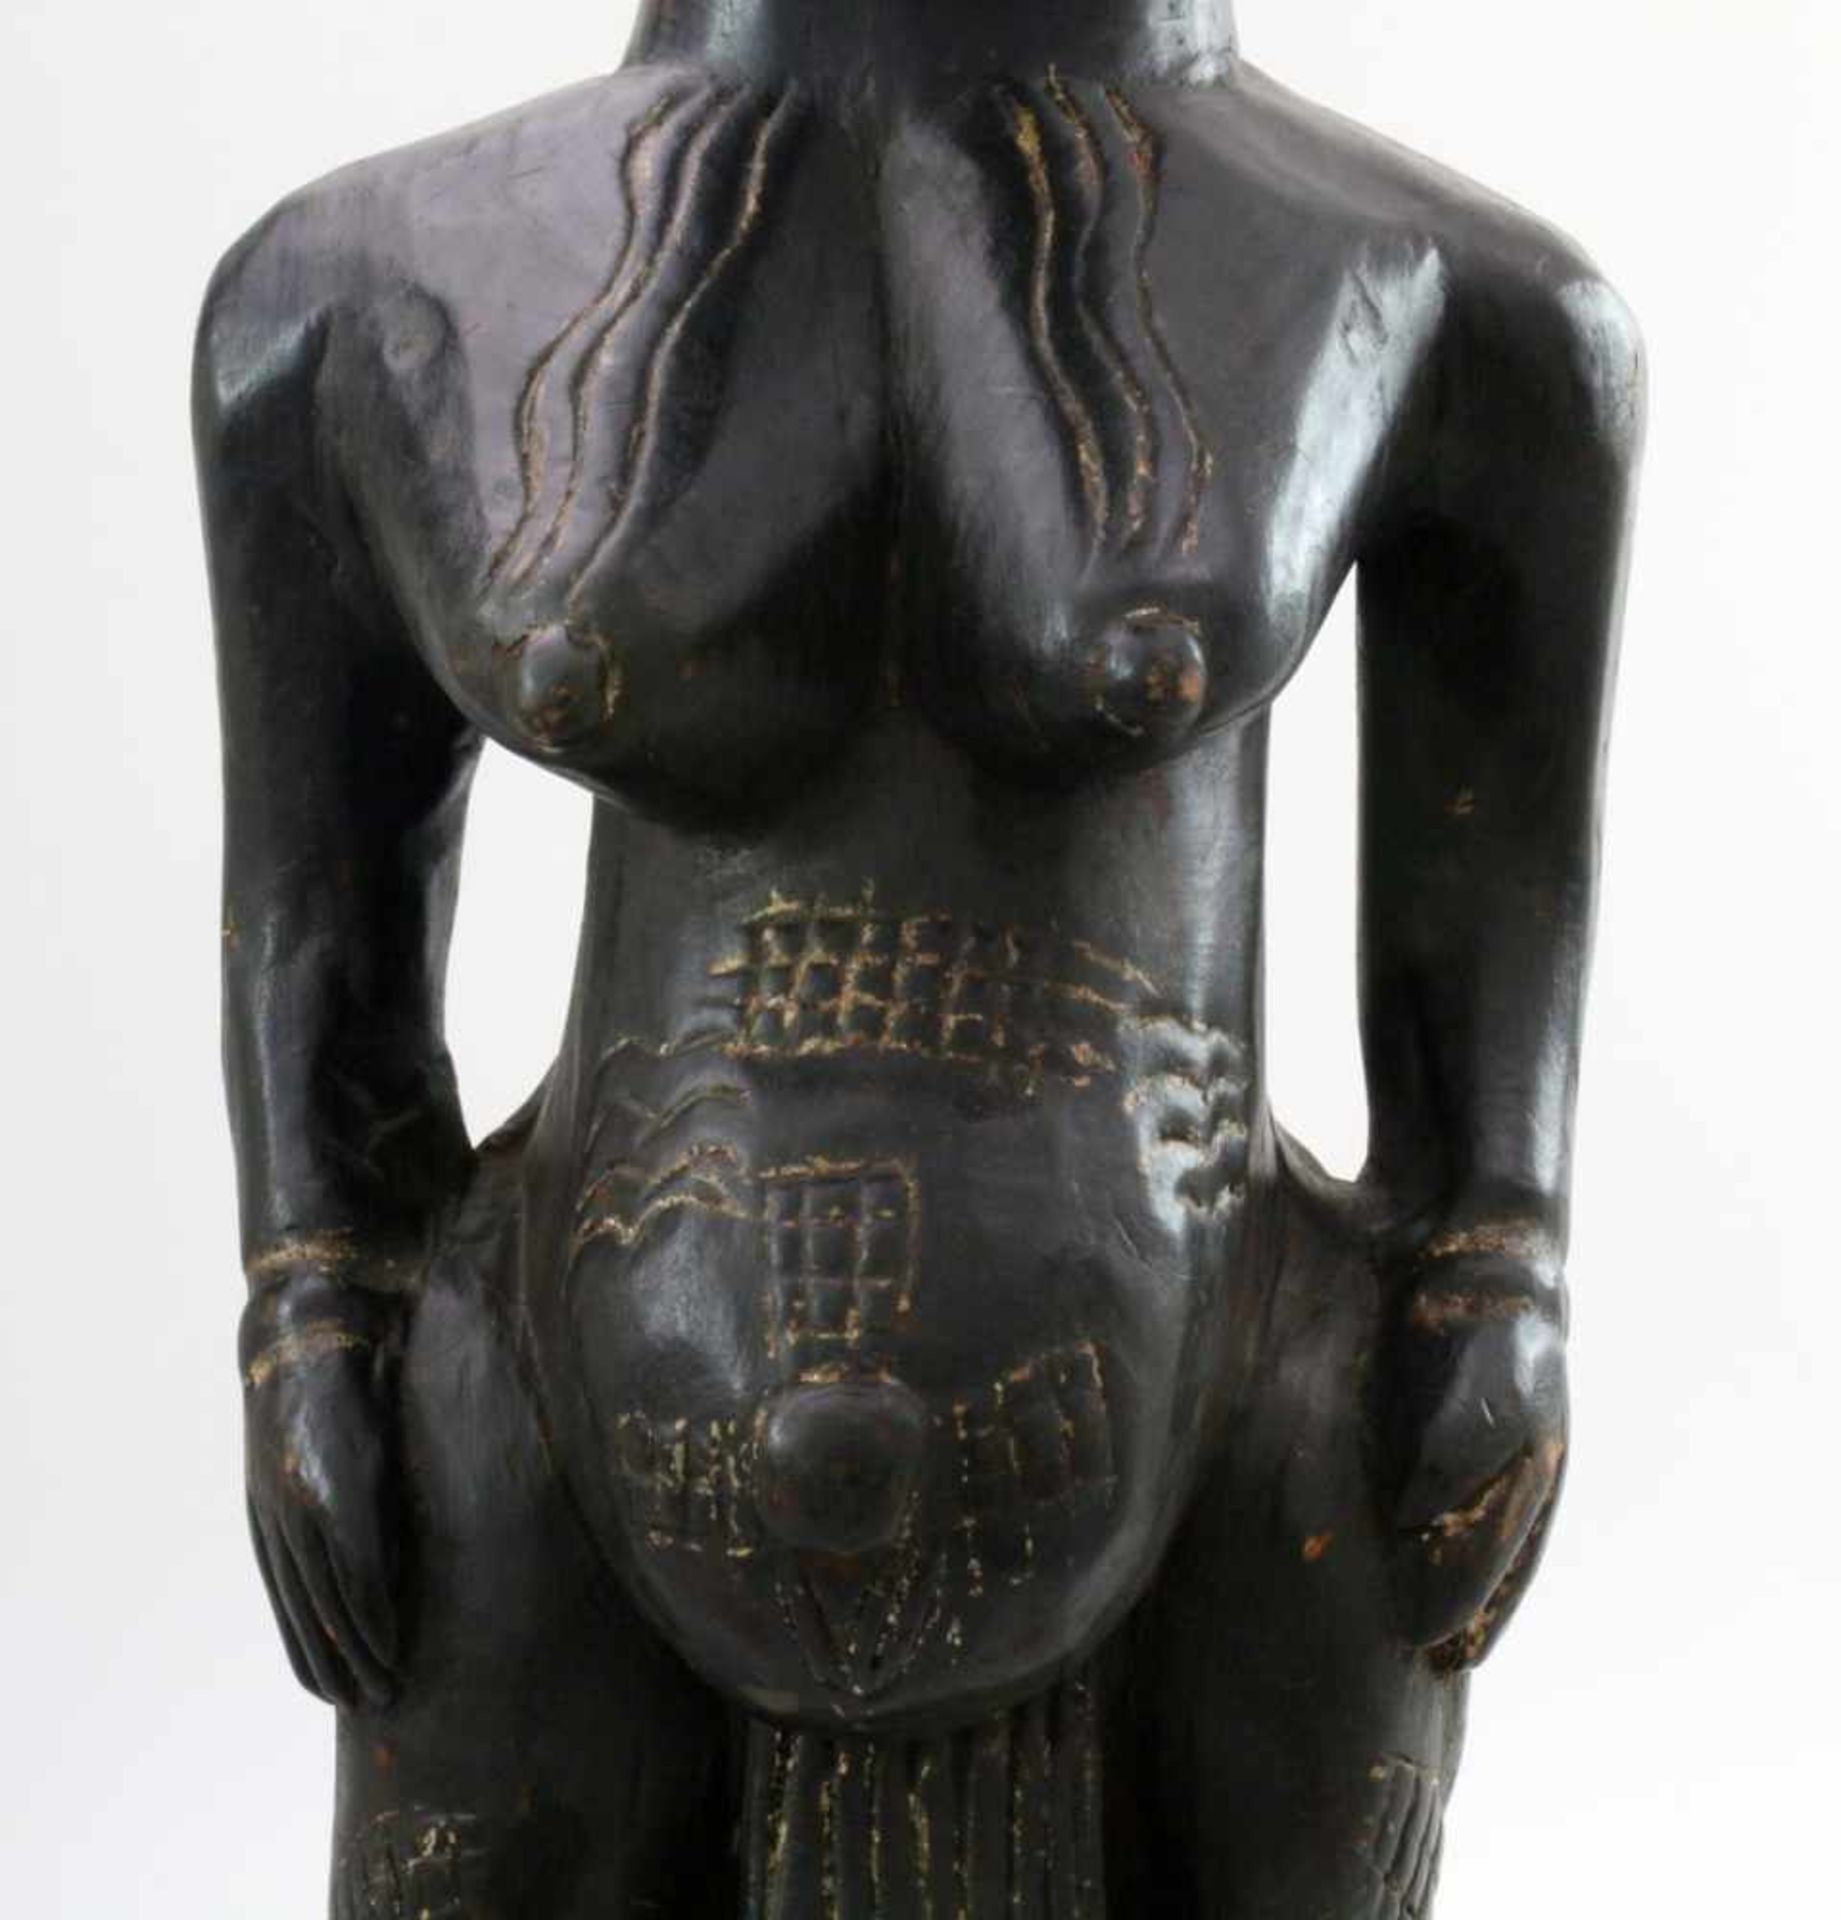 Westafrika - Große Ahnenfigur Schwarz / braun gefärbtes Tropenholz. Auf Stütze sitzende Figur, - Bild 6 aus 6